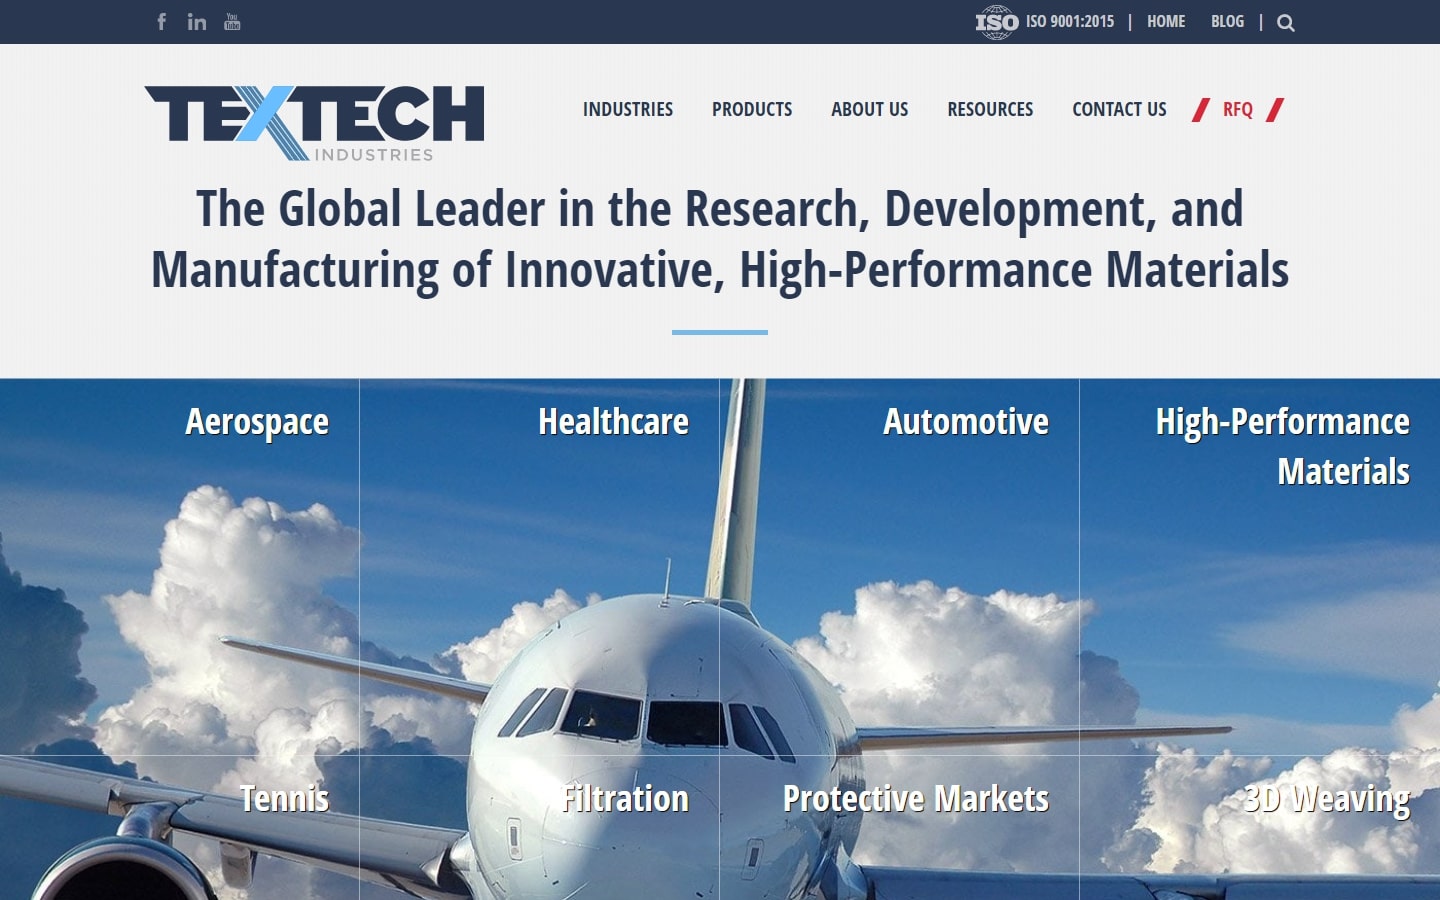 TextTech-Industries.jpg 